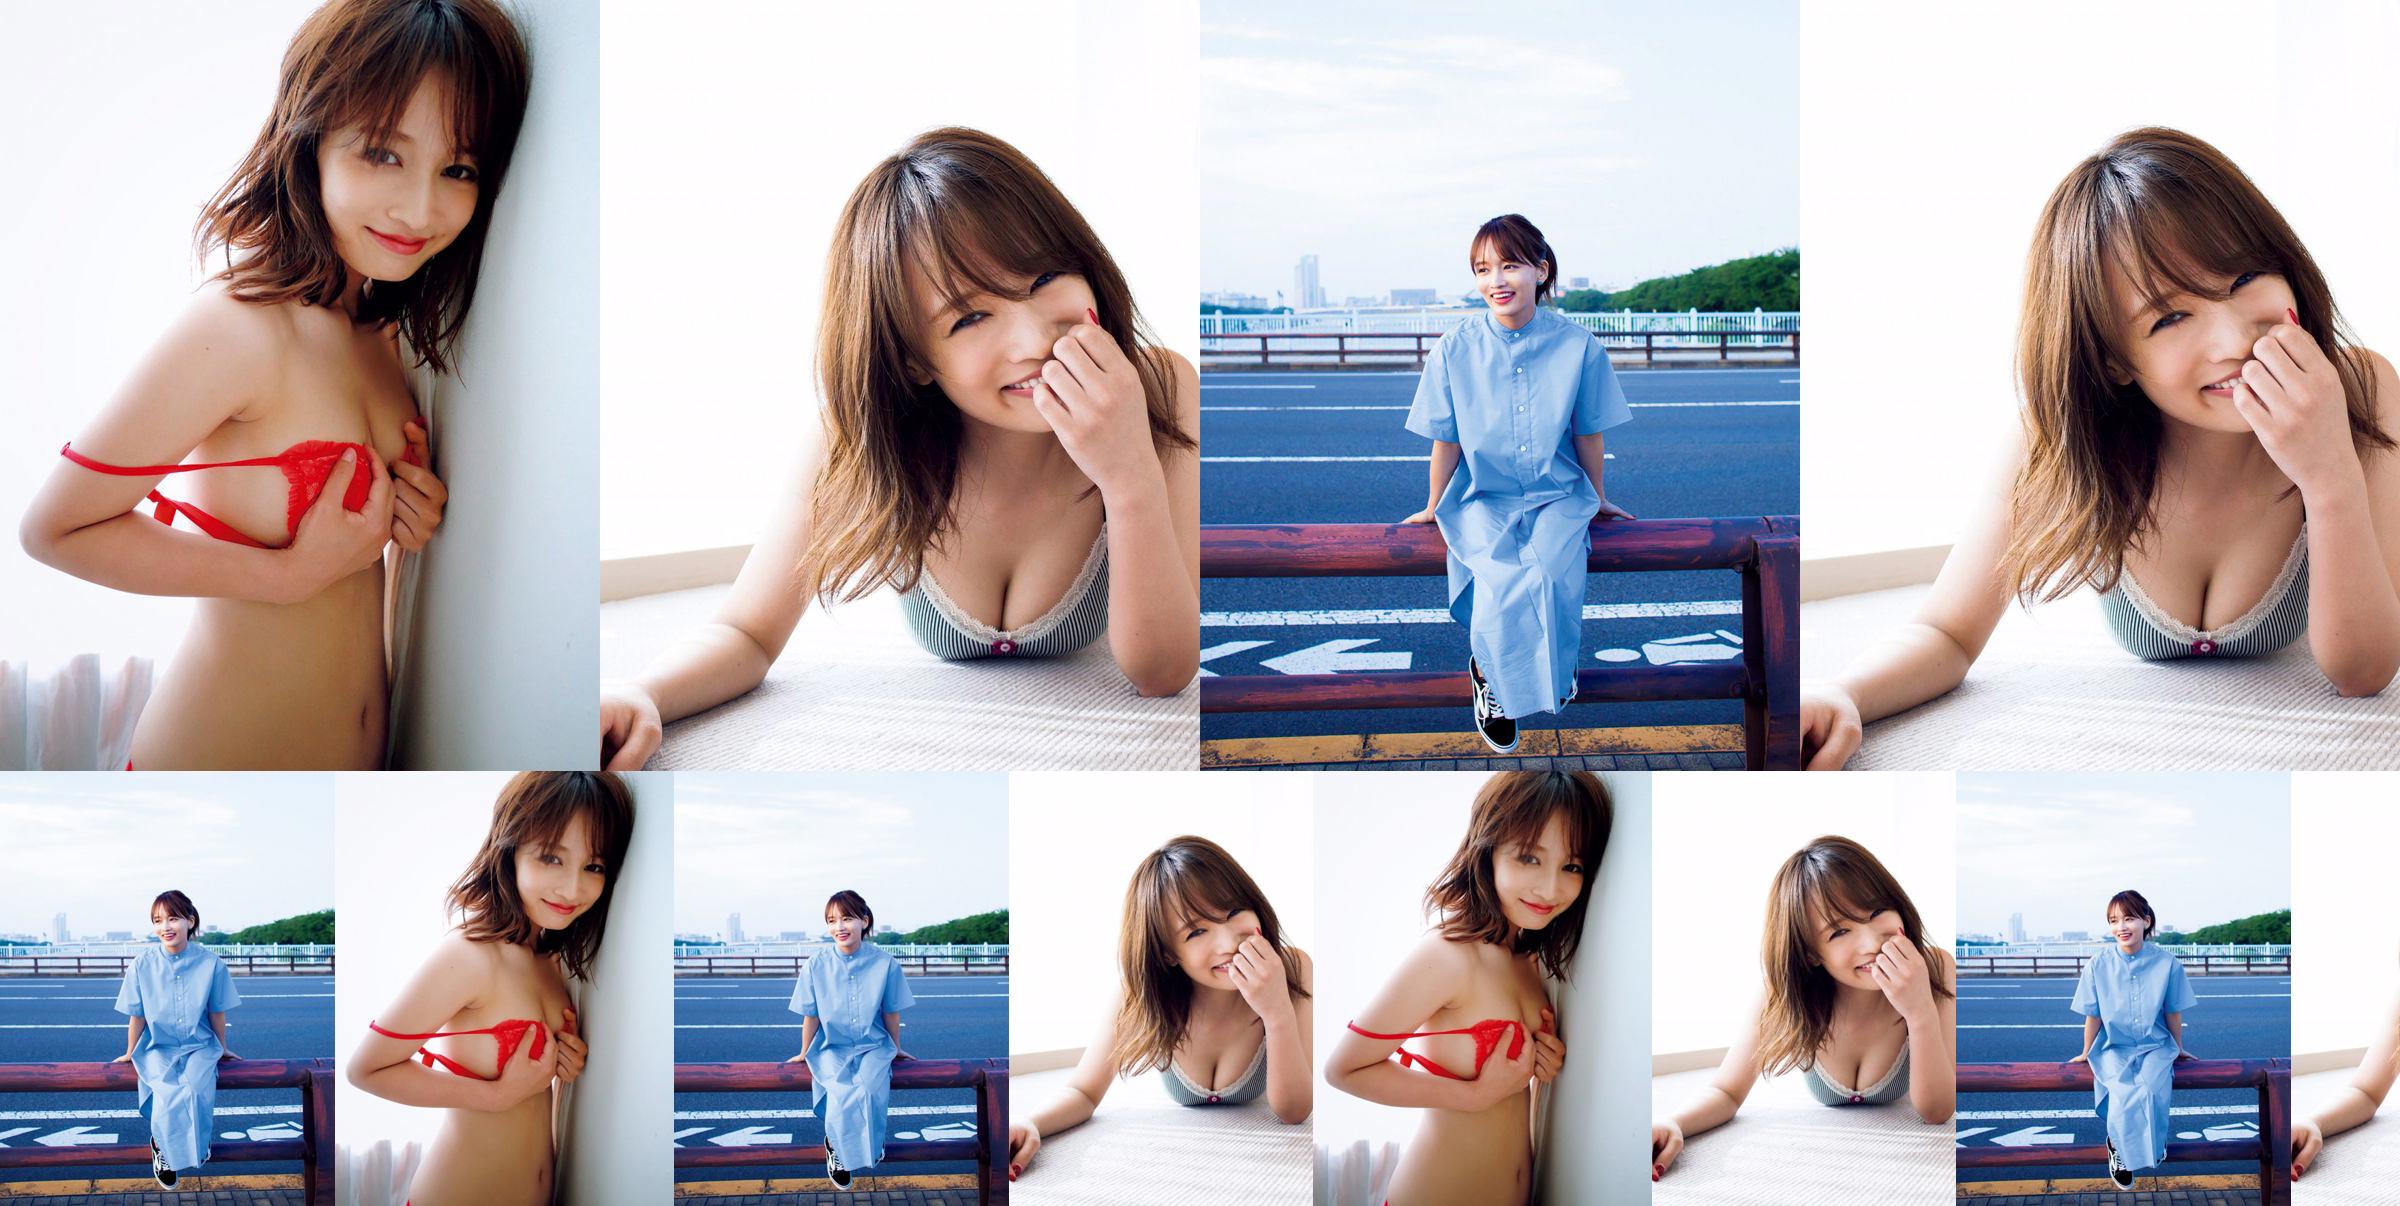 [ПЯТНИЦА] Mai Watanabe "Чубок F с тонким телом" фото No.54095c Страница 1